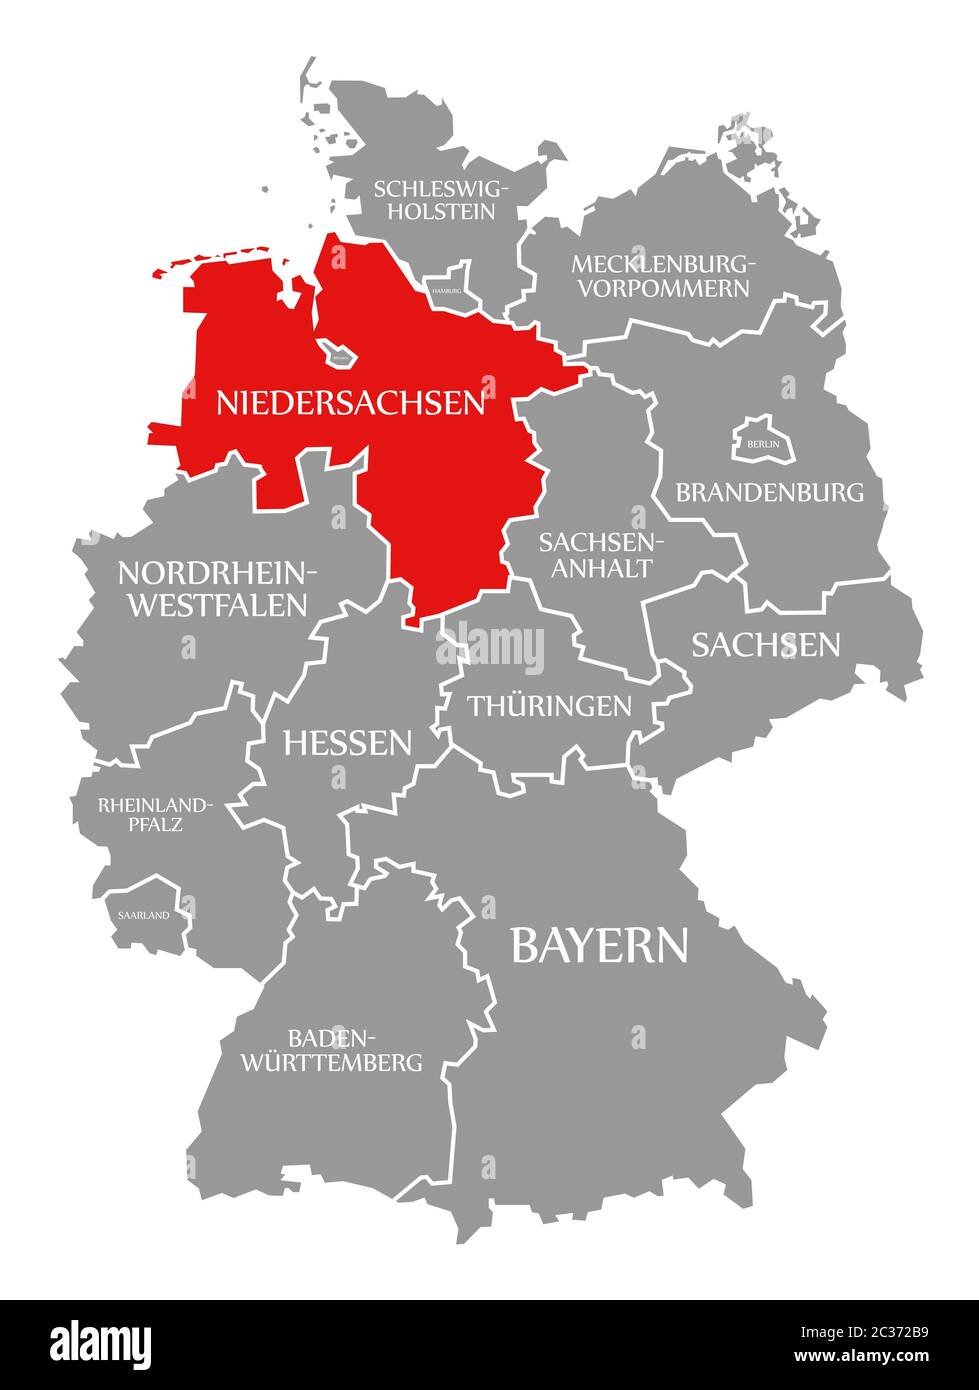 Baja Sajonia resaltada en rojo en el mapa de Alemania Foto de stock